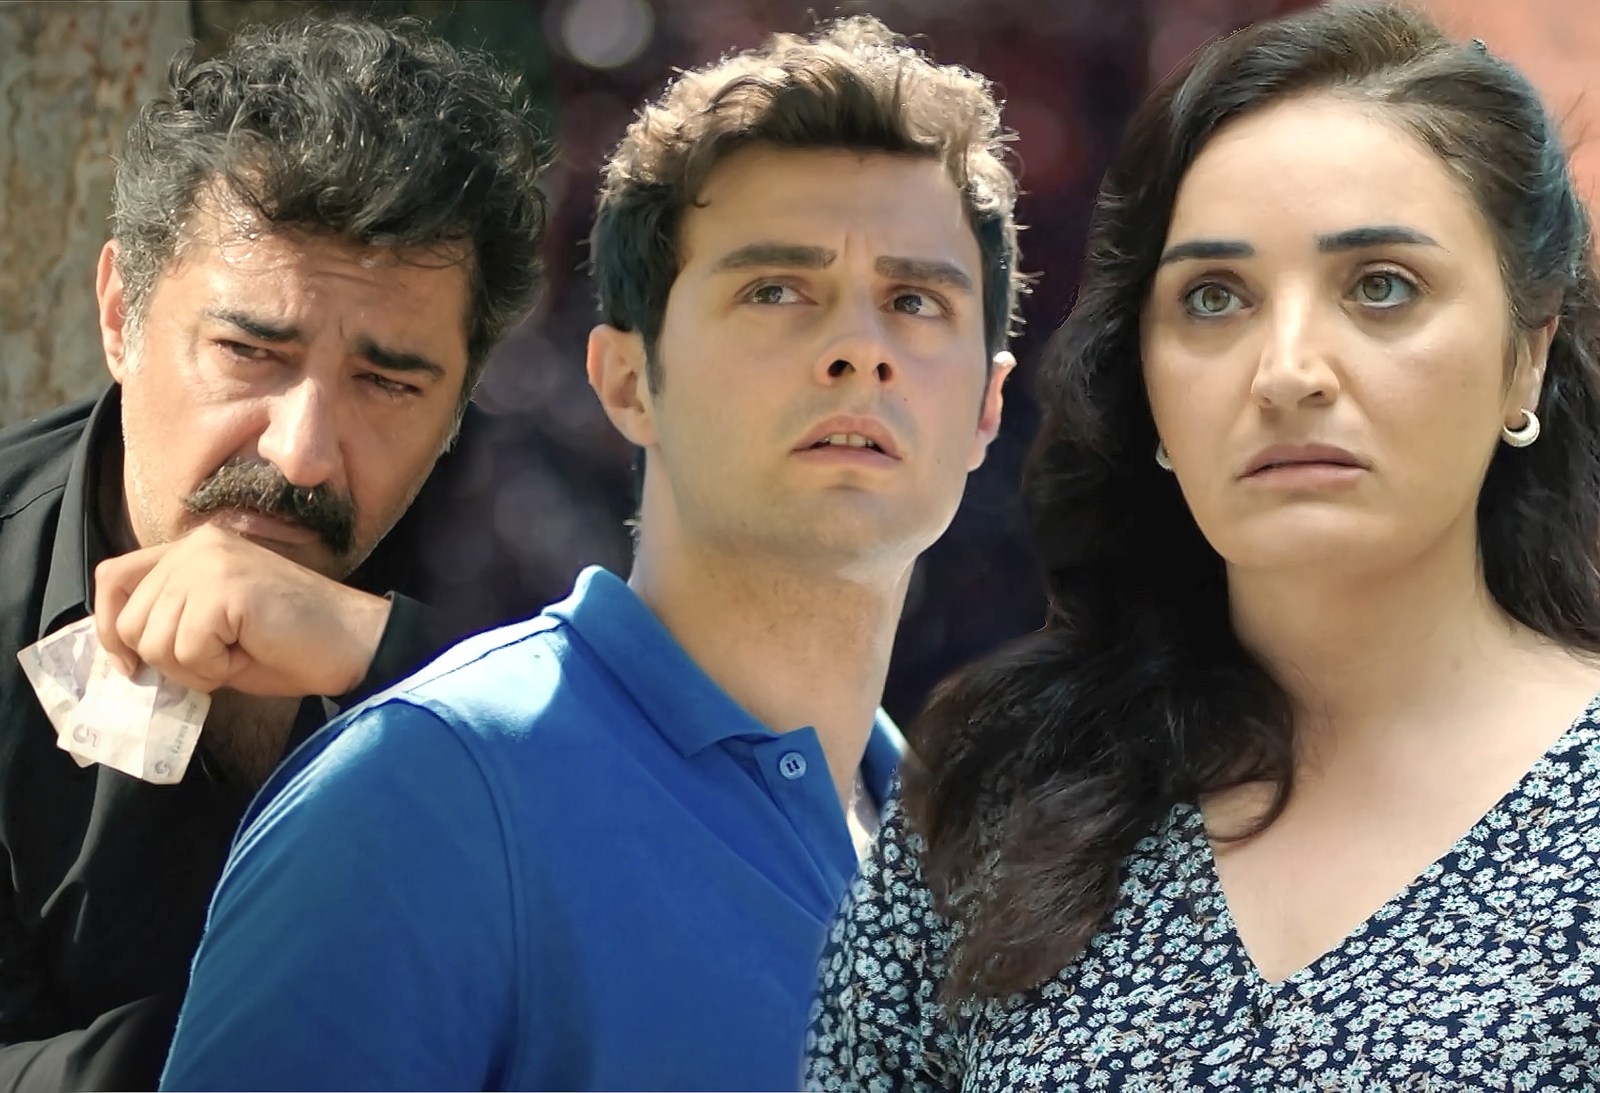 Todo cambiará para Akif, Ómer y Şengül en el final de la segunda temporada de Hermanos